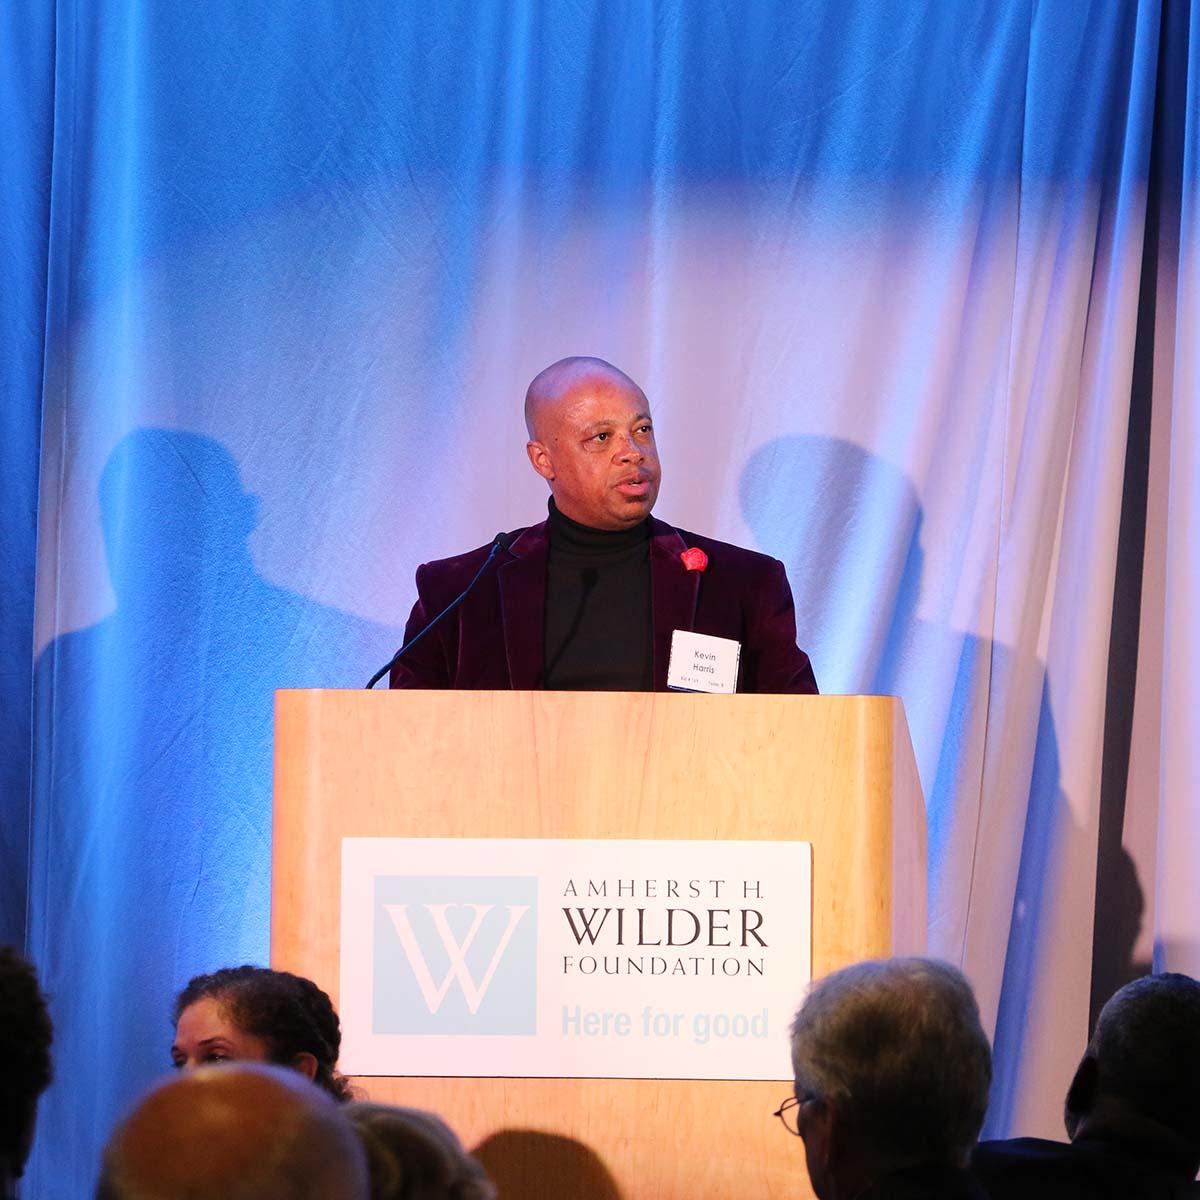 Kevin Harris speaking at the podium at Ordinary Magic, Wilder's signature fundraising event